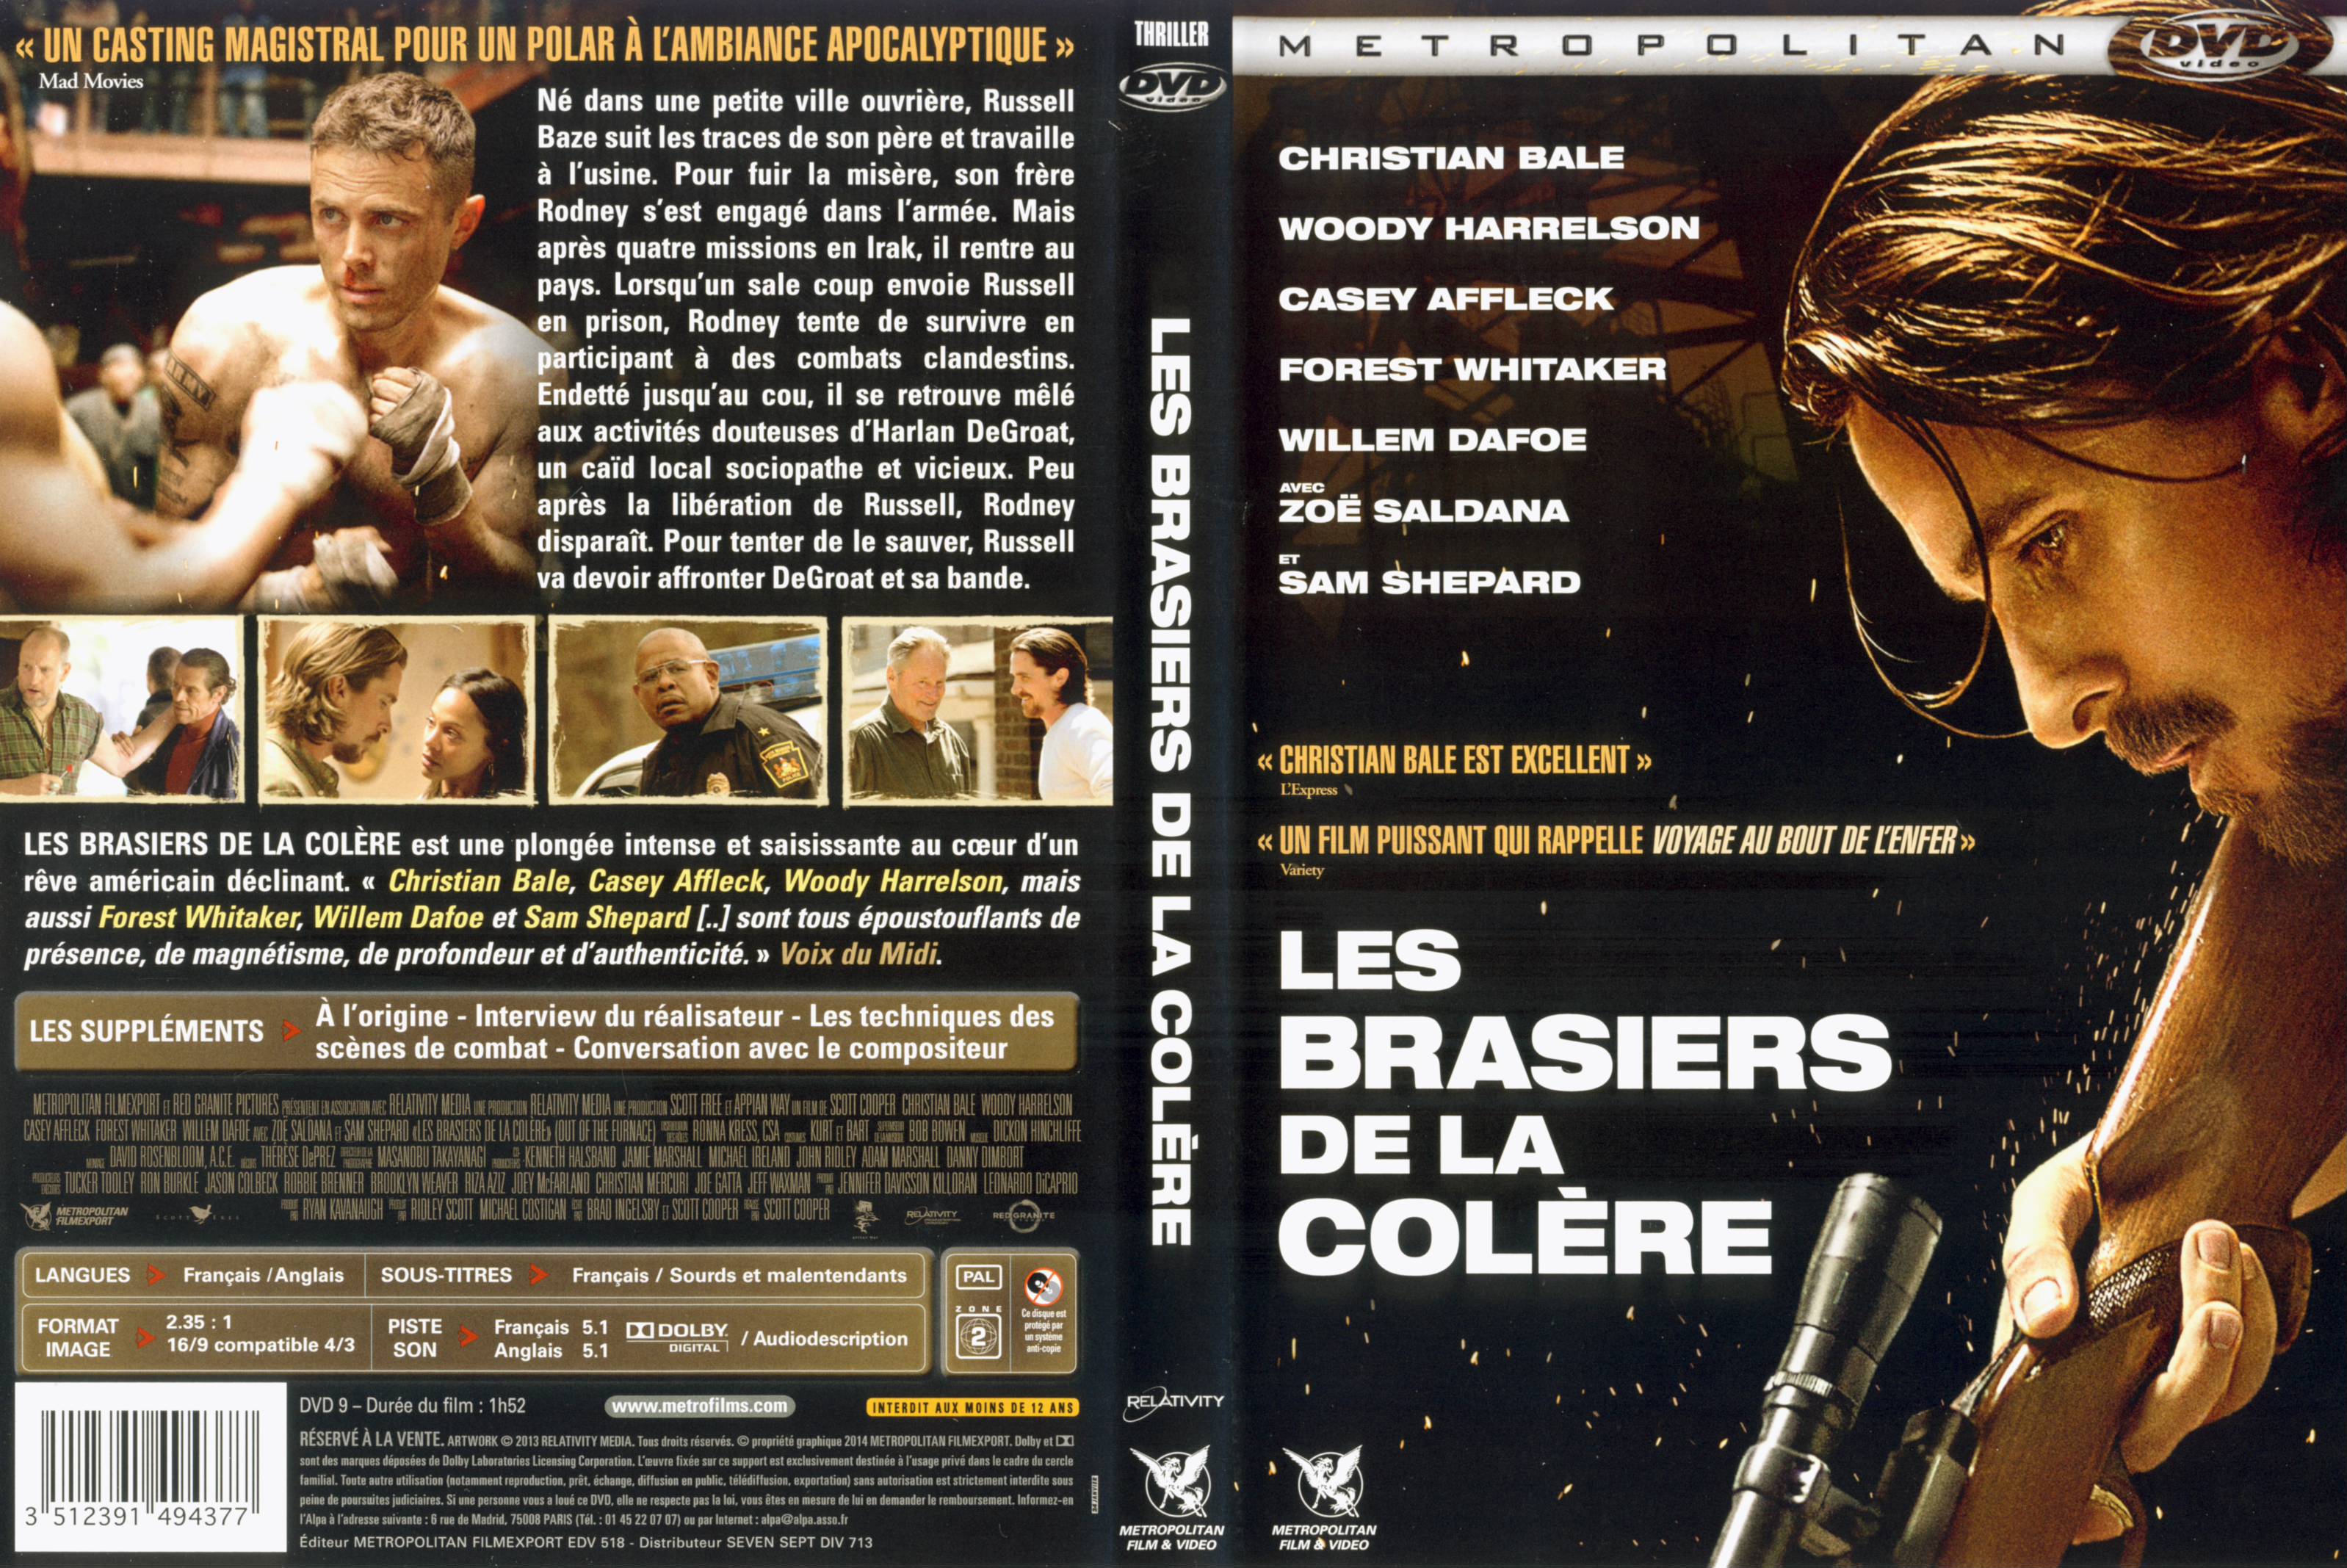 Jaquette DVD Les Brasiers de la Colre